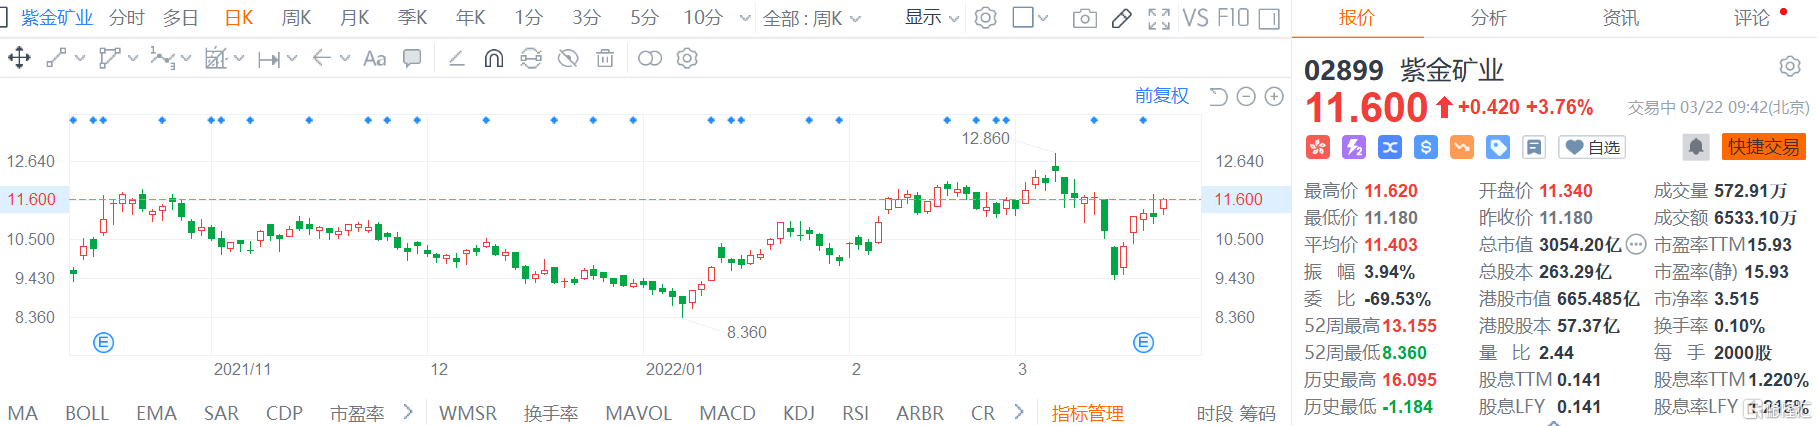 紫金矿业(2899.HK)股价继续走强 现报11.6港元涨幅3.7%